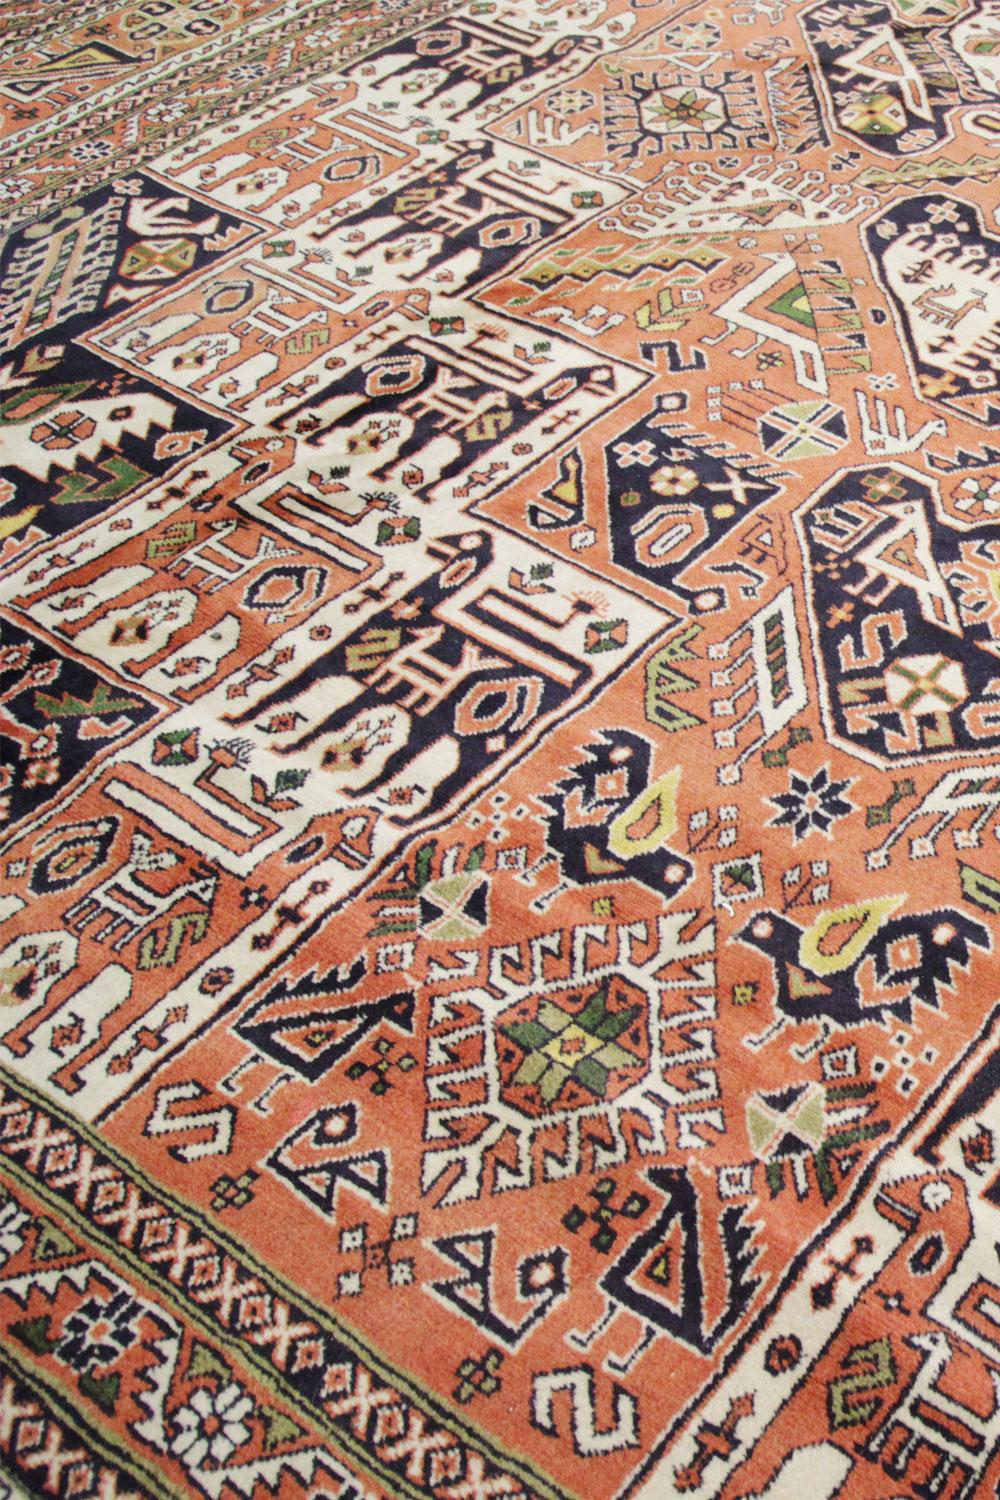 Matériaux organiques Grand tapis traditionnel afghan tribal, tapis en laine multicolore fait à la main en vente